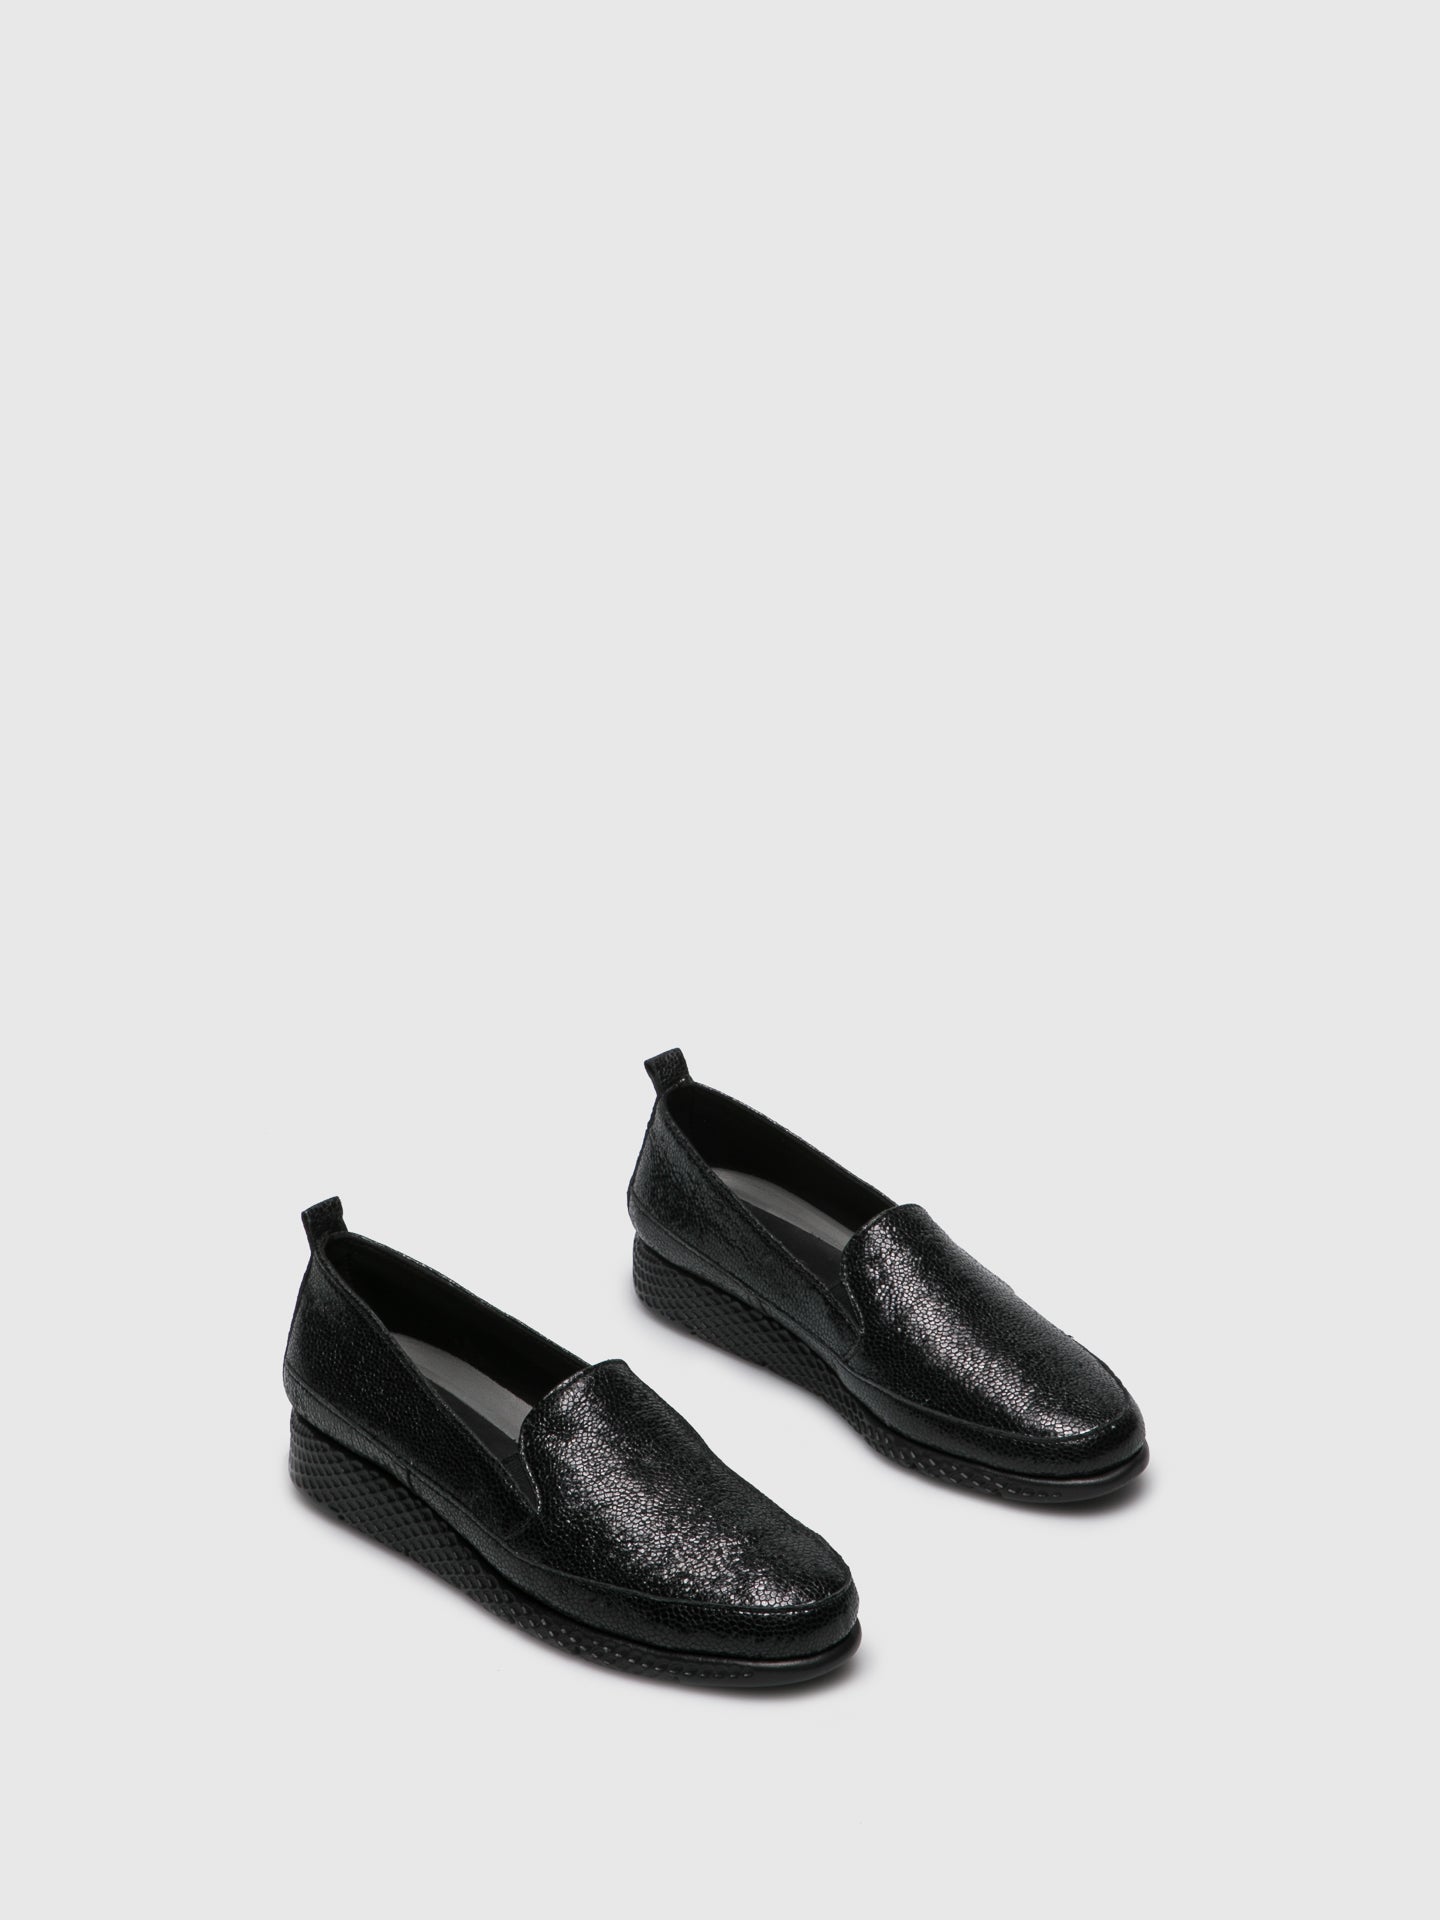 Saydo Black Mocassins Shoes